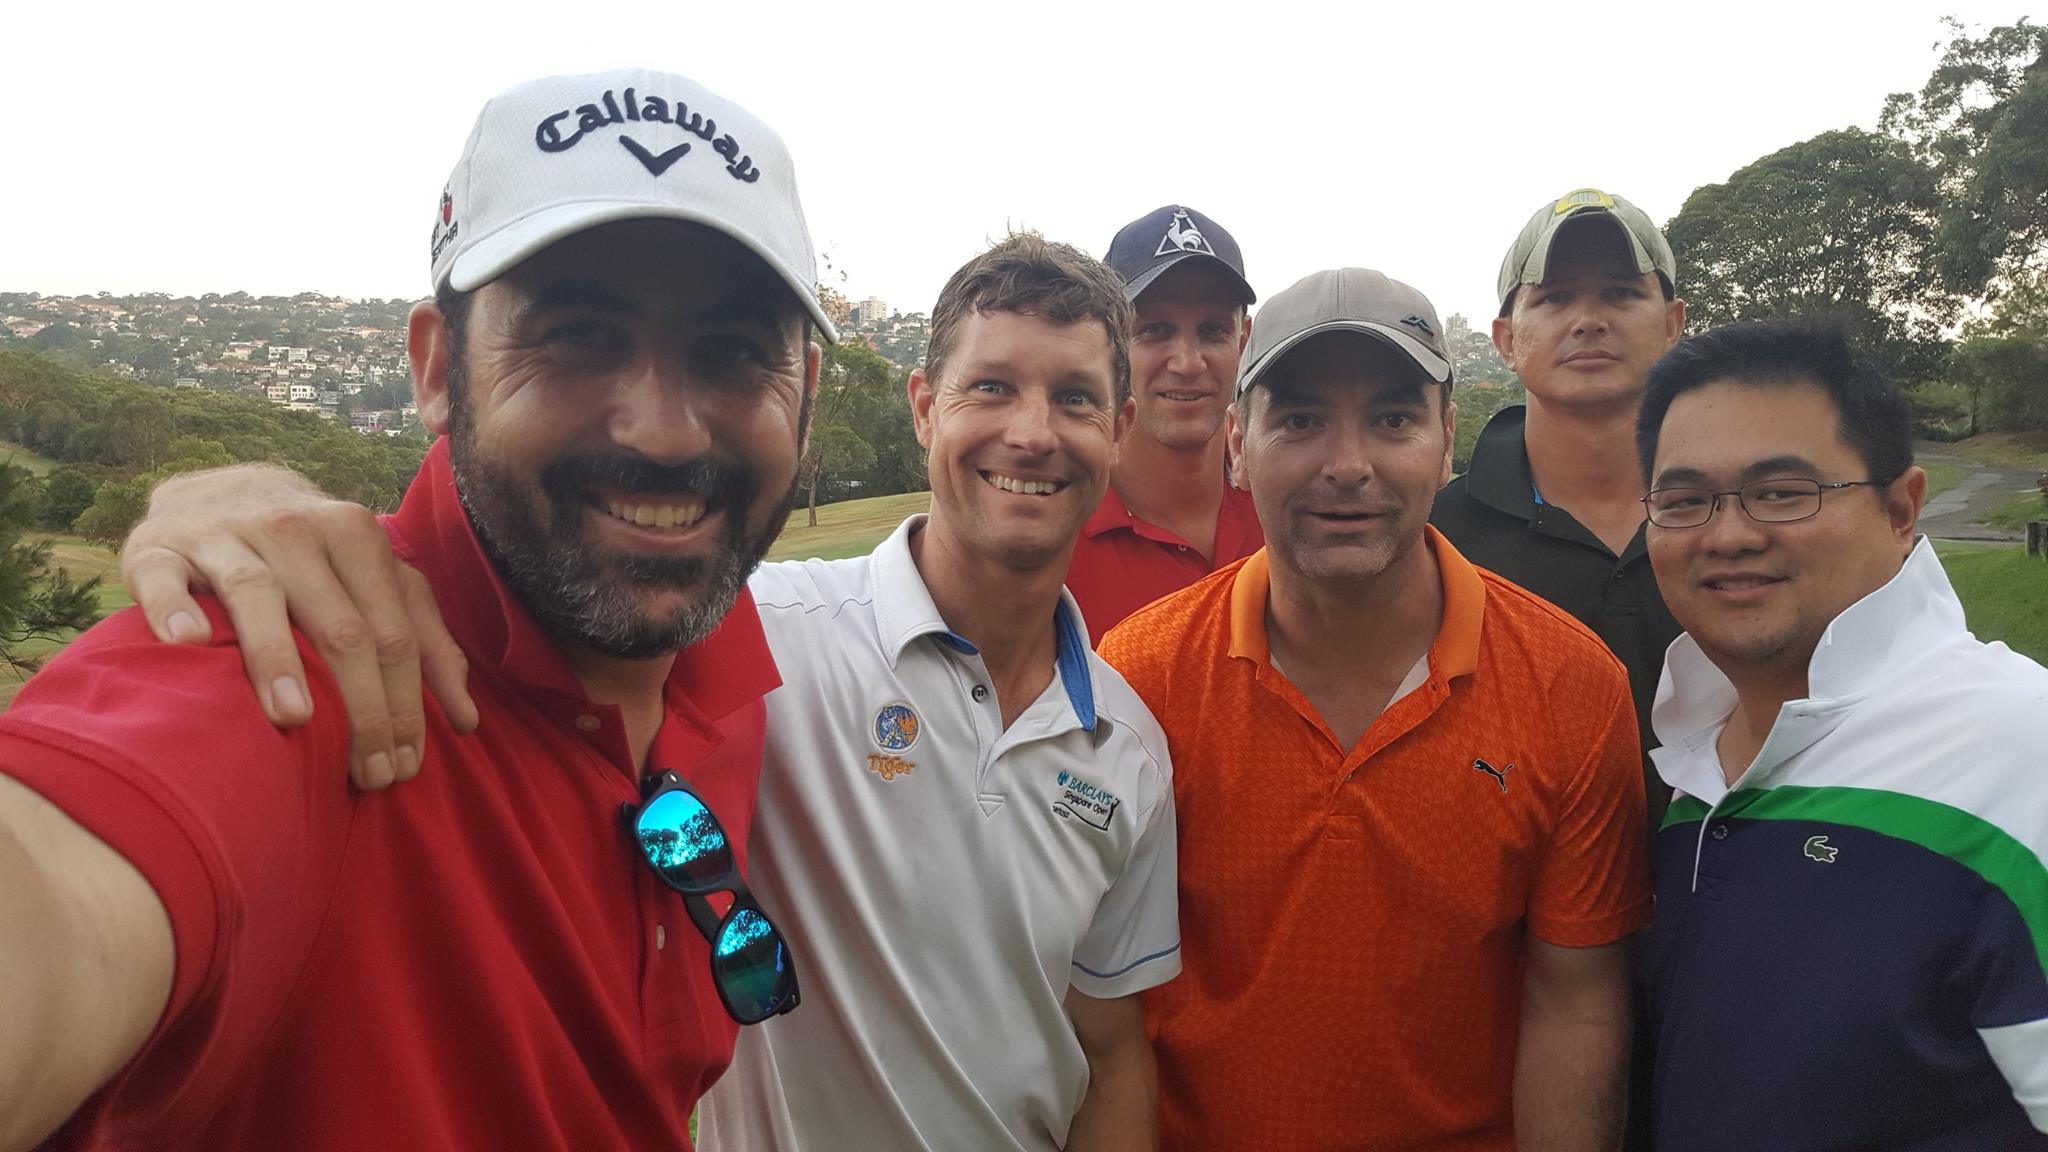 Michael Doig, Shane Murphy, Ben Knight, Sam Martin, Robert Filzer and Dennis Cu at Golf Day